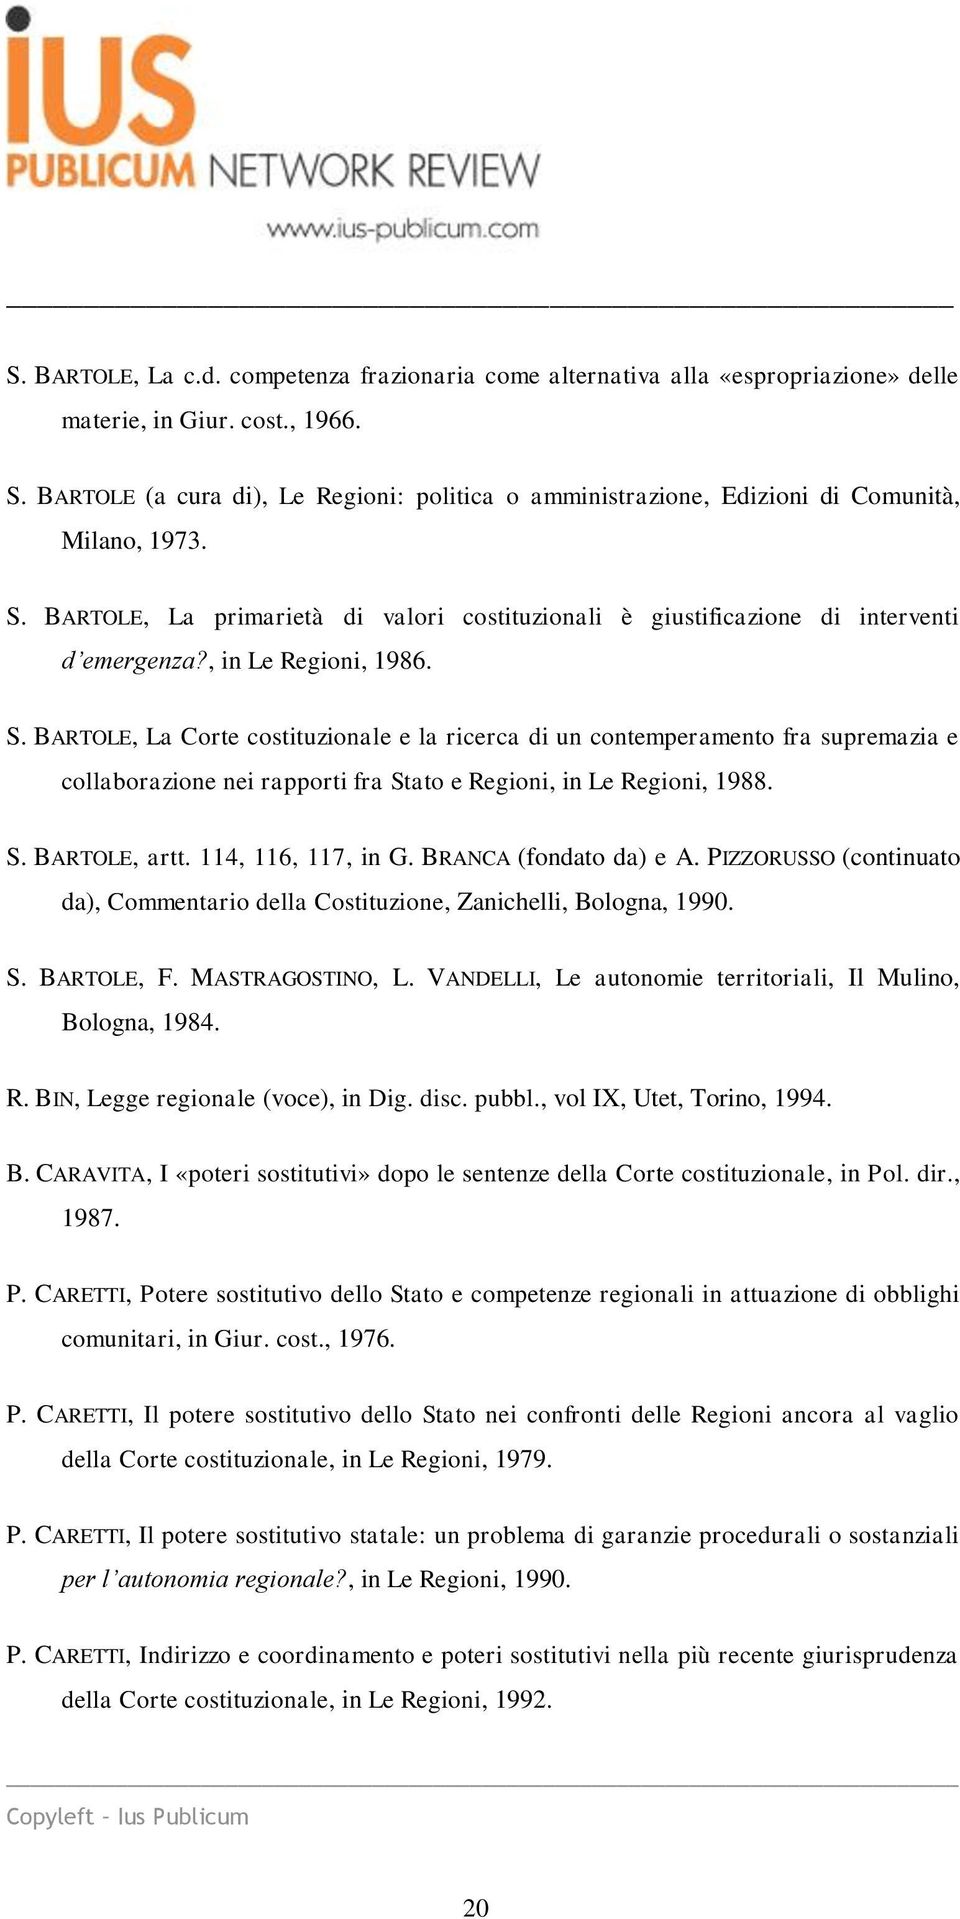 , in Le Regioni, 1986. S. BARTOLE, La Corte costituzionale e la ricerca di un contemperamento fra supremazia e collaborazione nei rapporti fra Stato e Regioni, in Le Regioni, 1988. S. BARTOLE, artt.